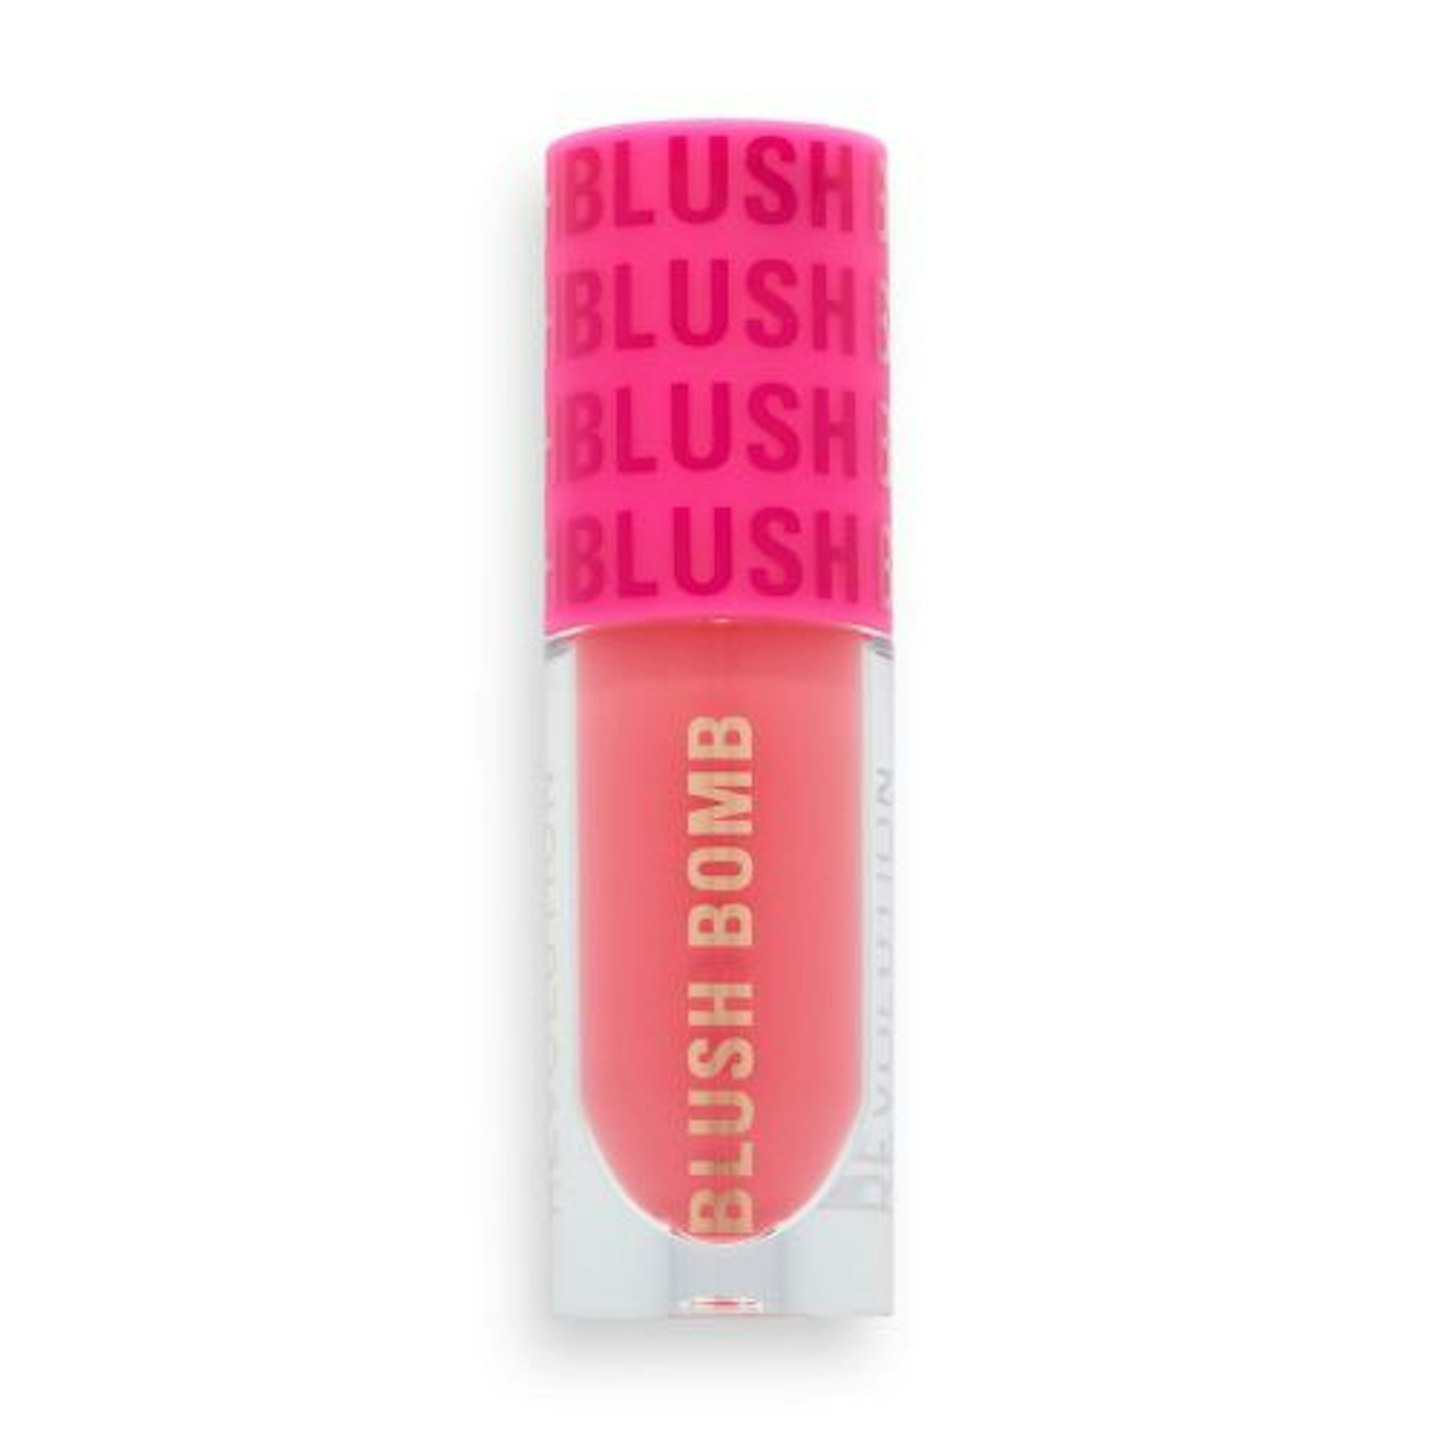 Makeup Revolution Blush Bomb